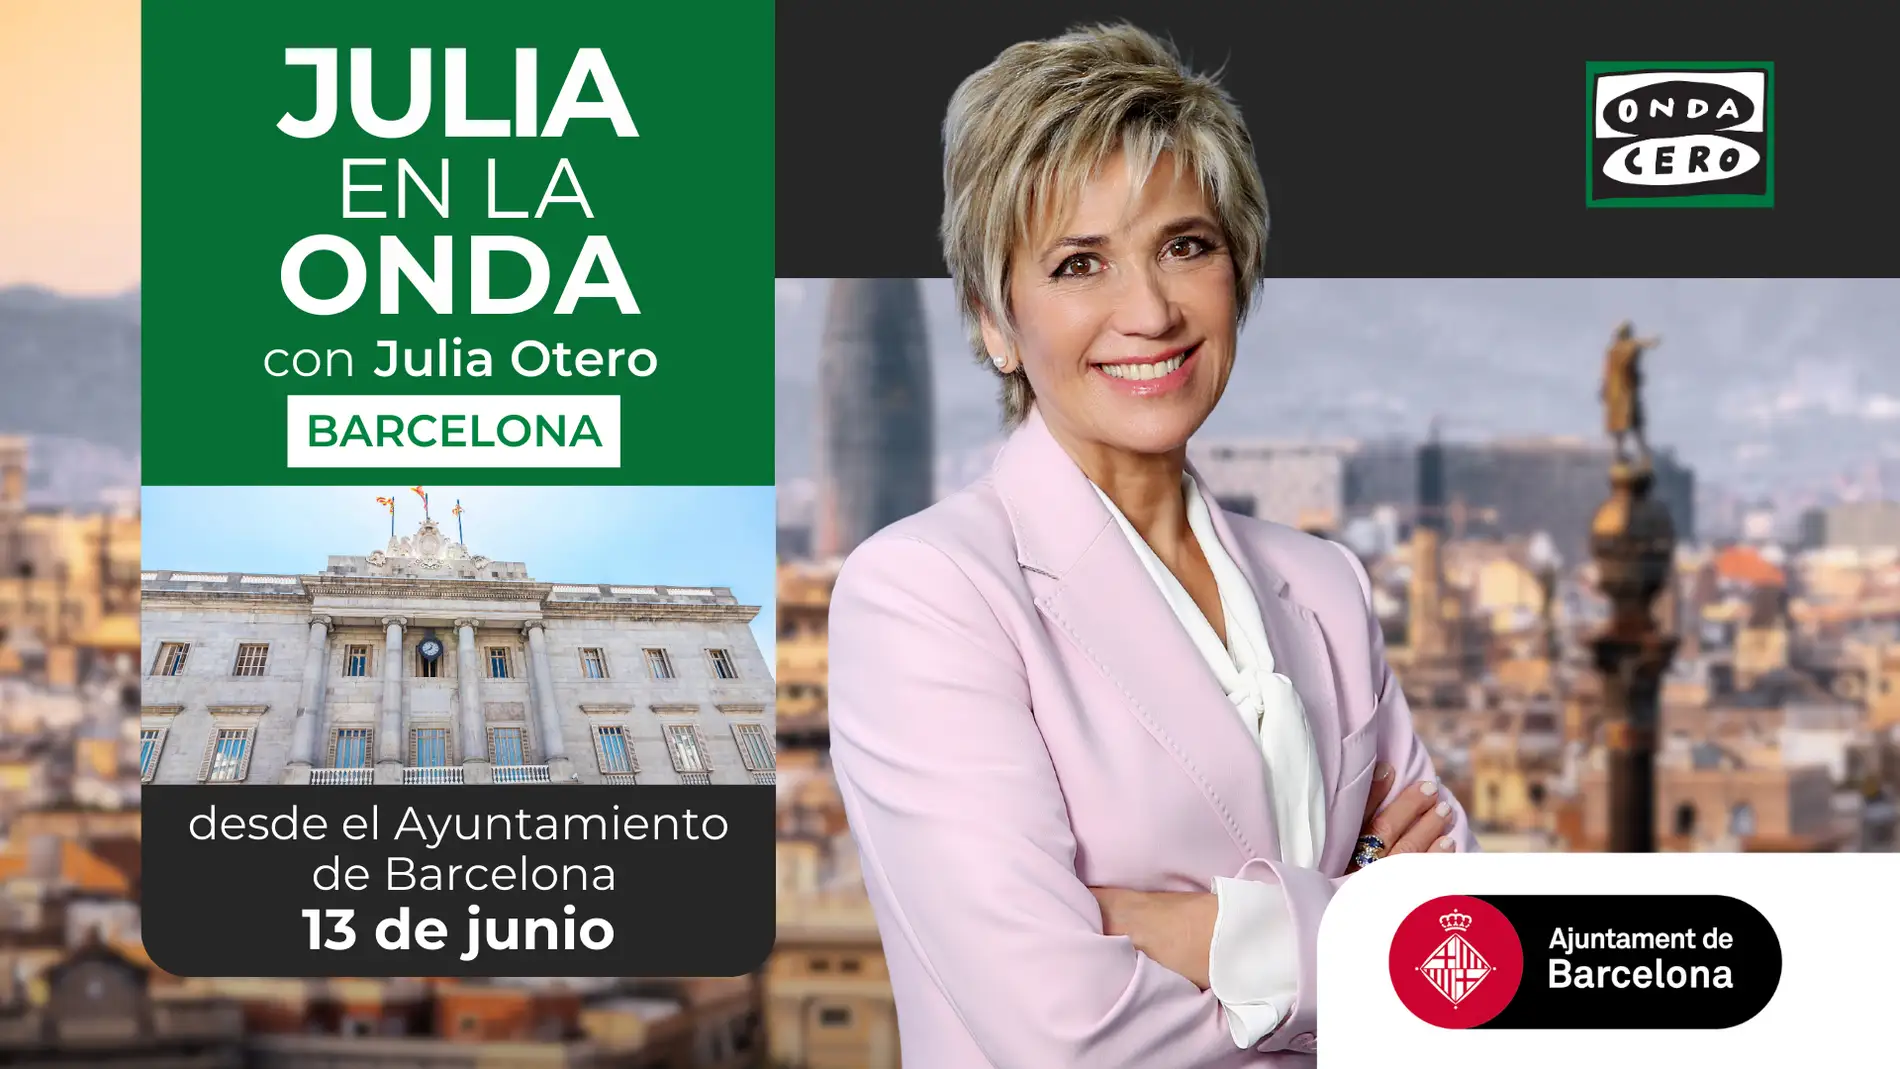 Programa especial de 'Julia en la onda' desde el Ayuntamiento de Barcelona